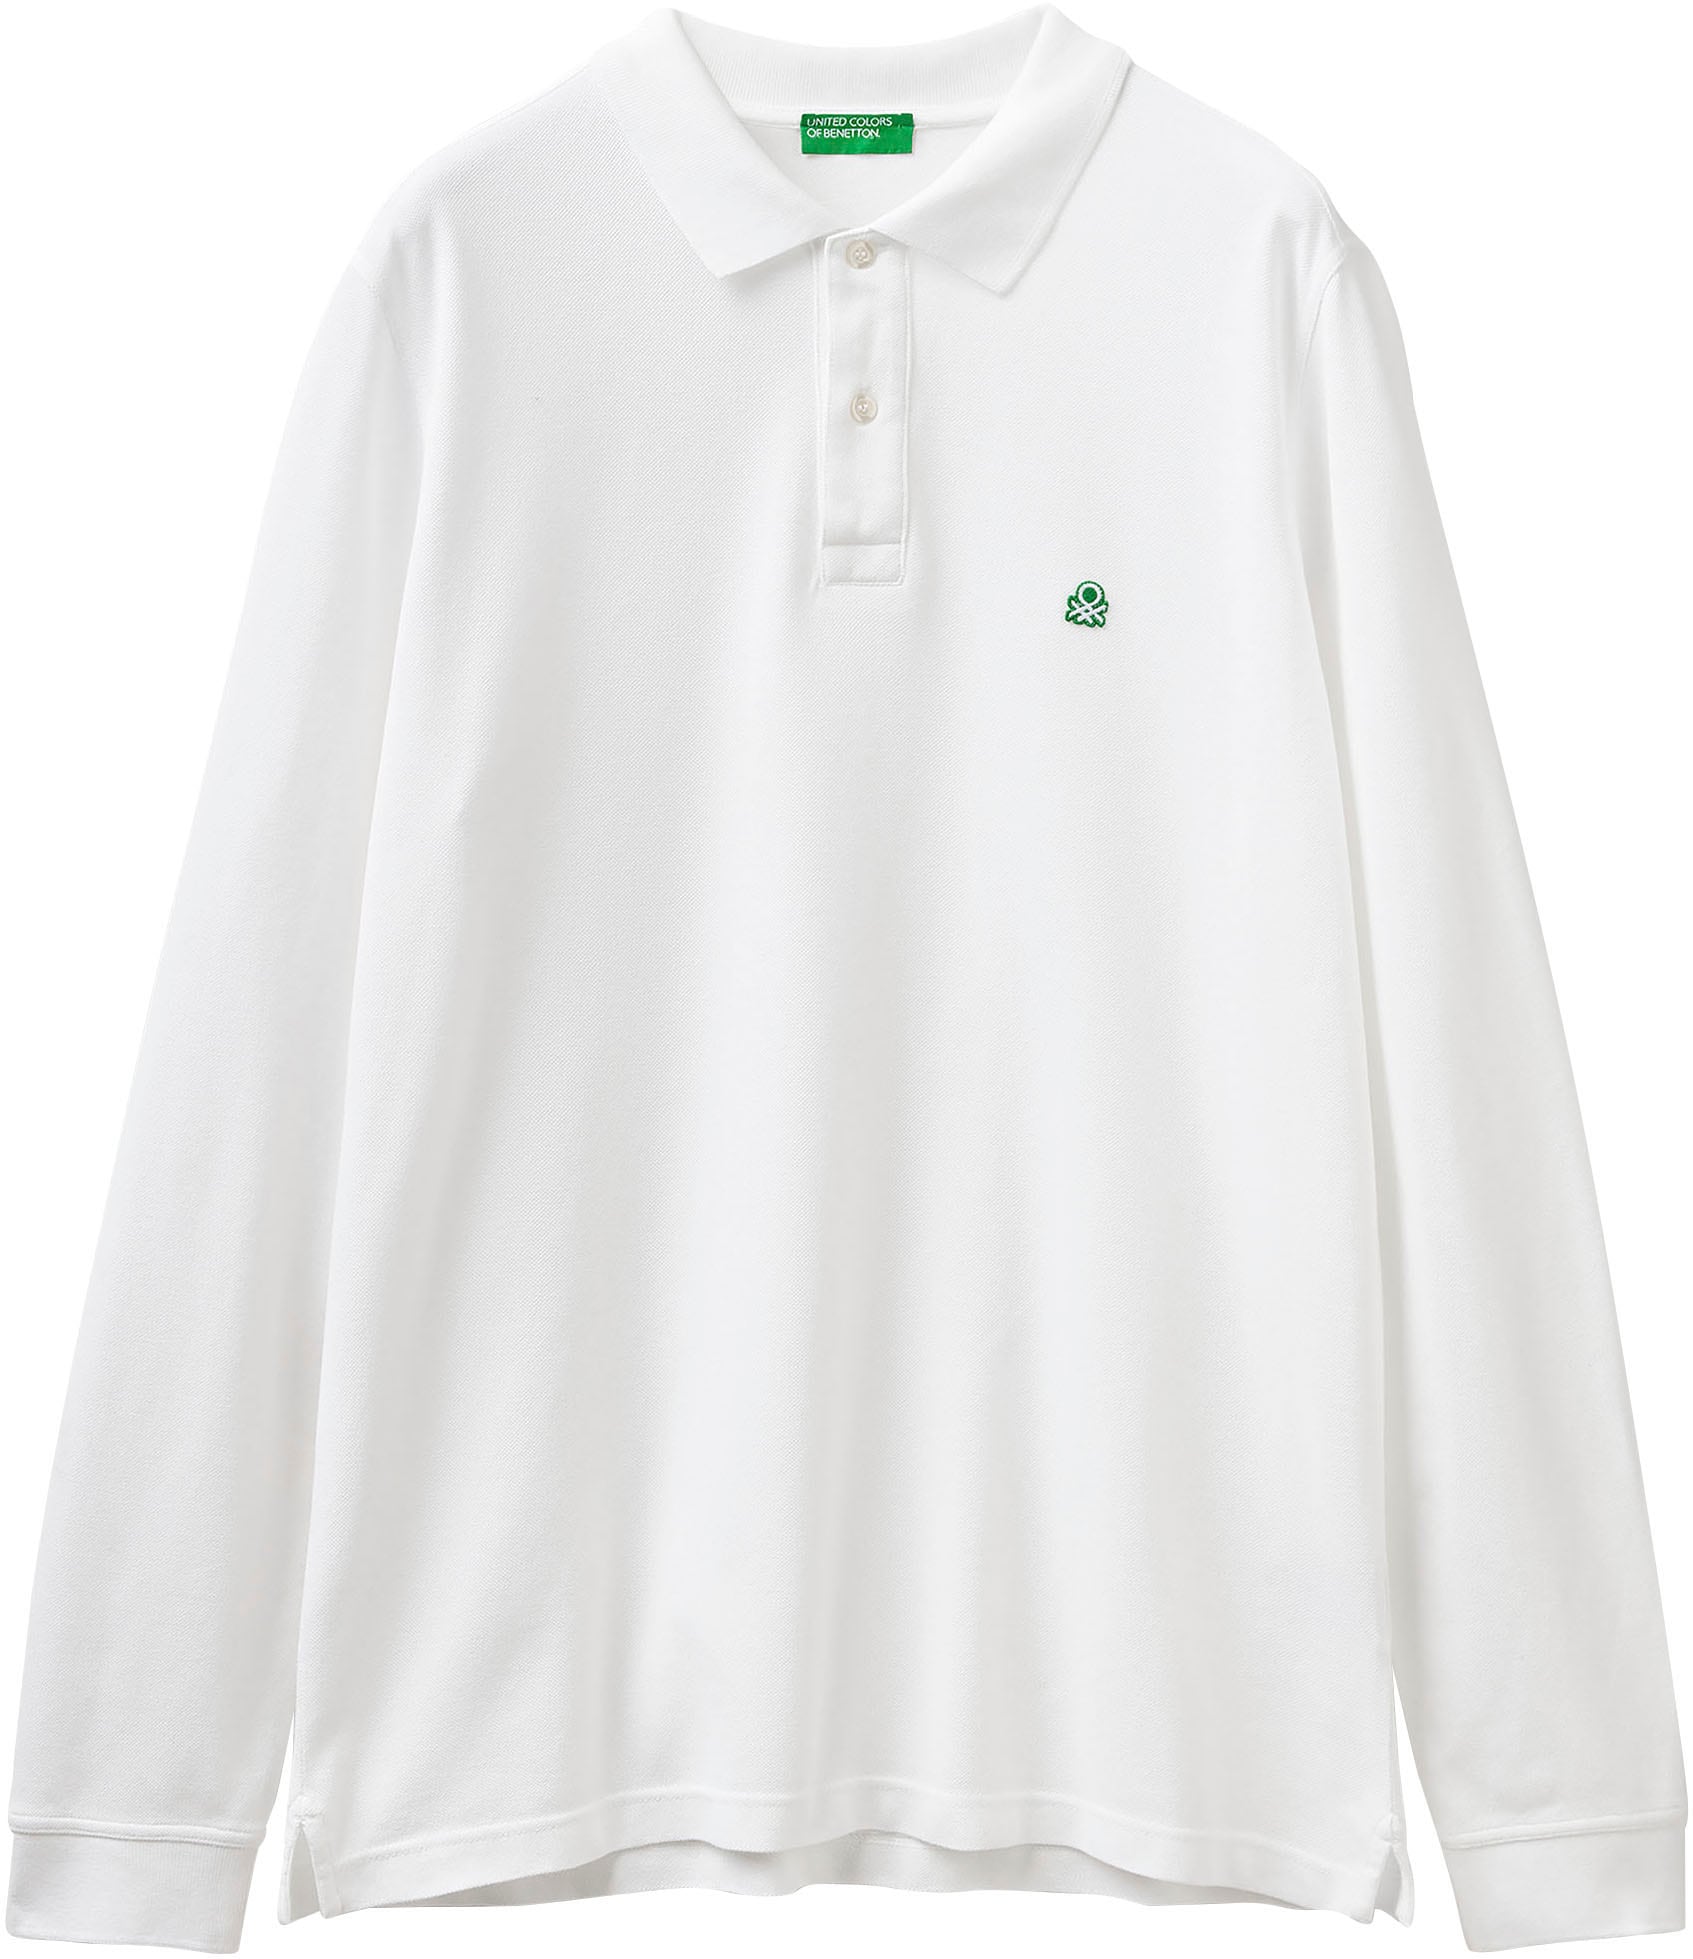 United Colors of Benetton Langarm-Poloshirt, mit seitlichen, kleinen Schlitzen